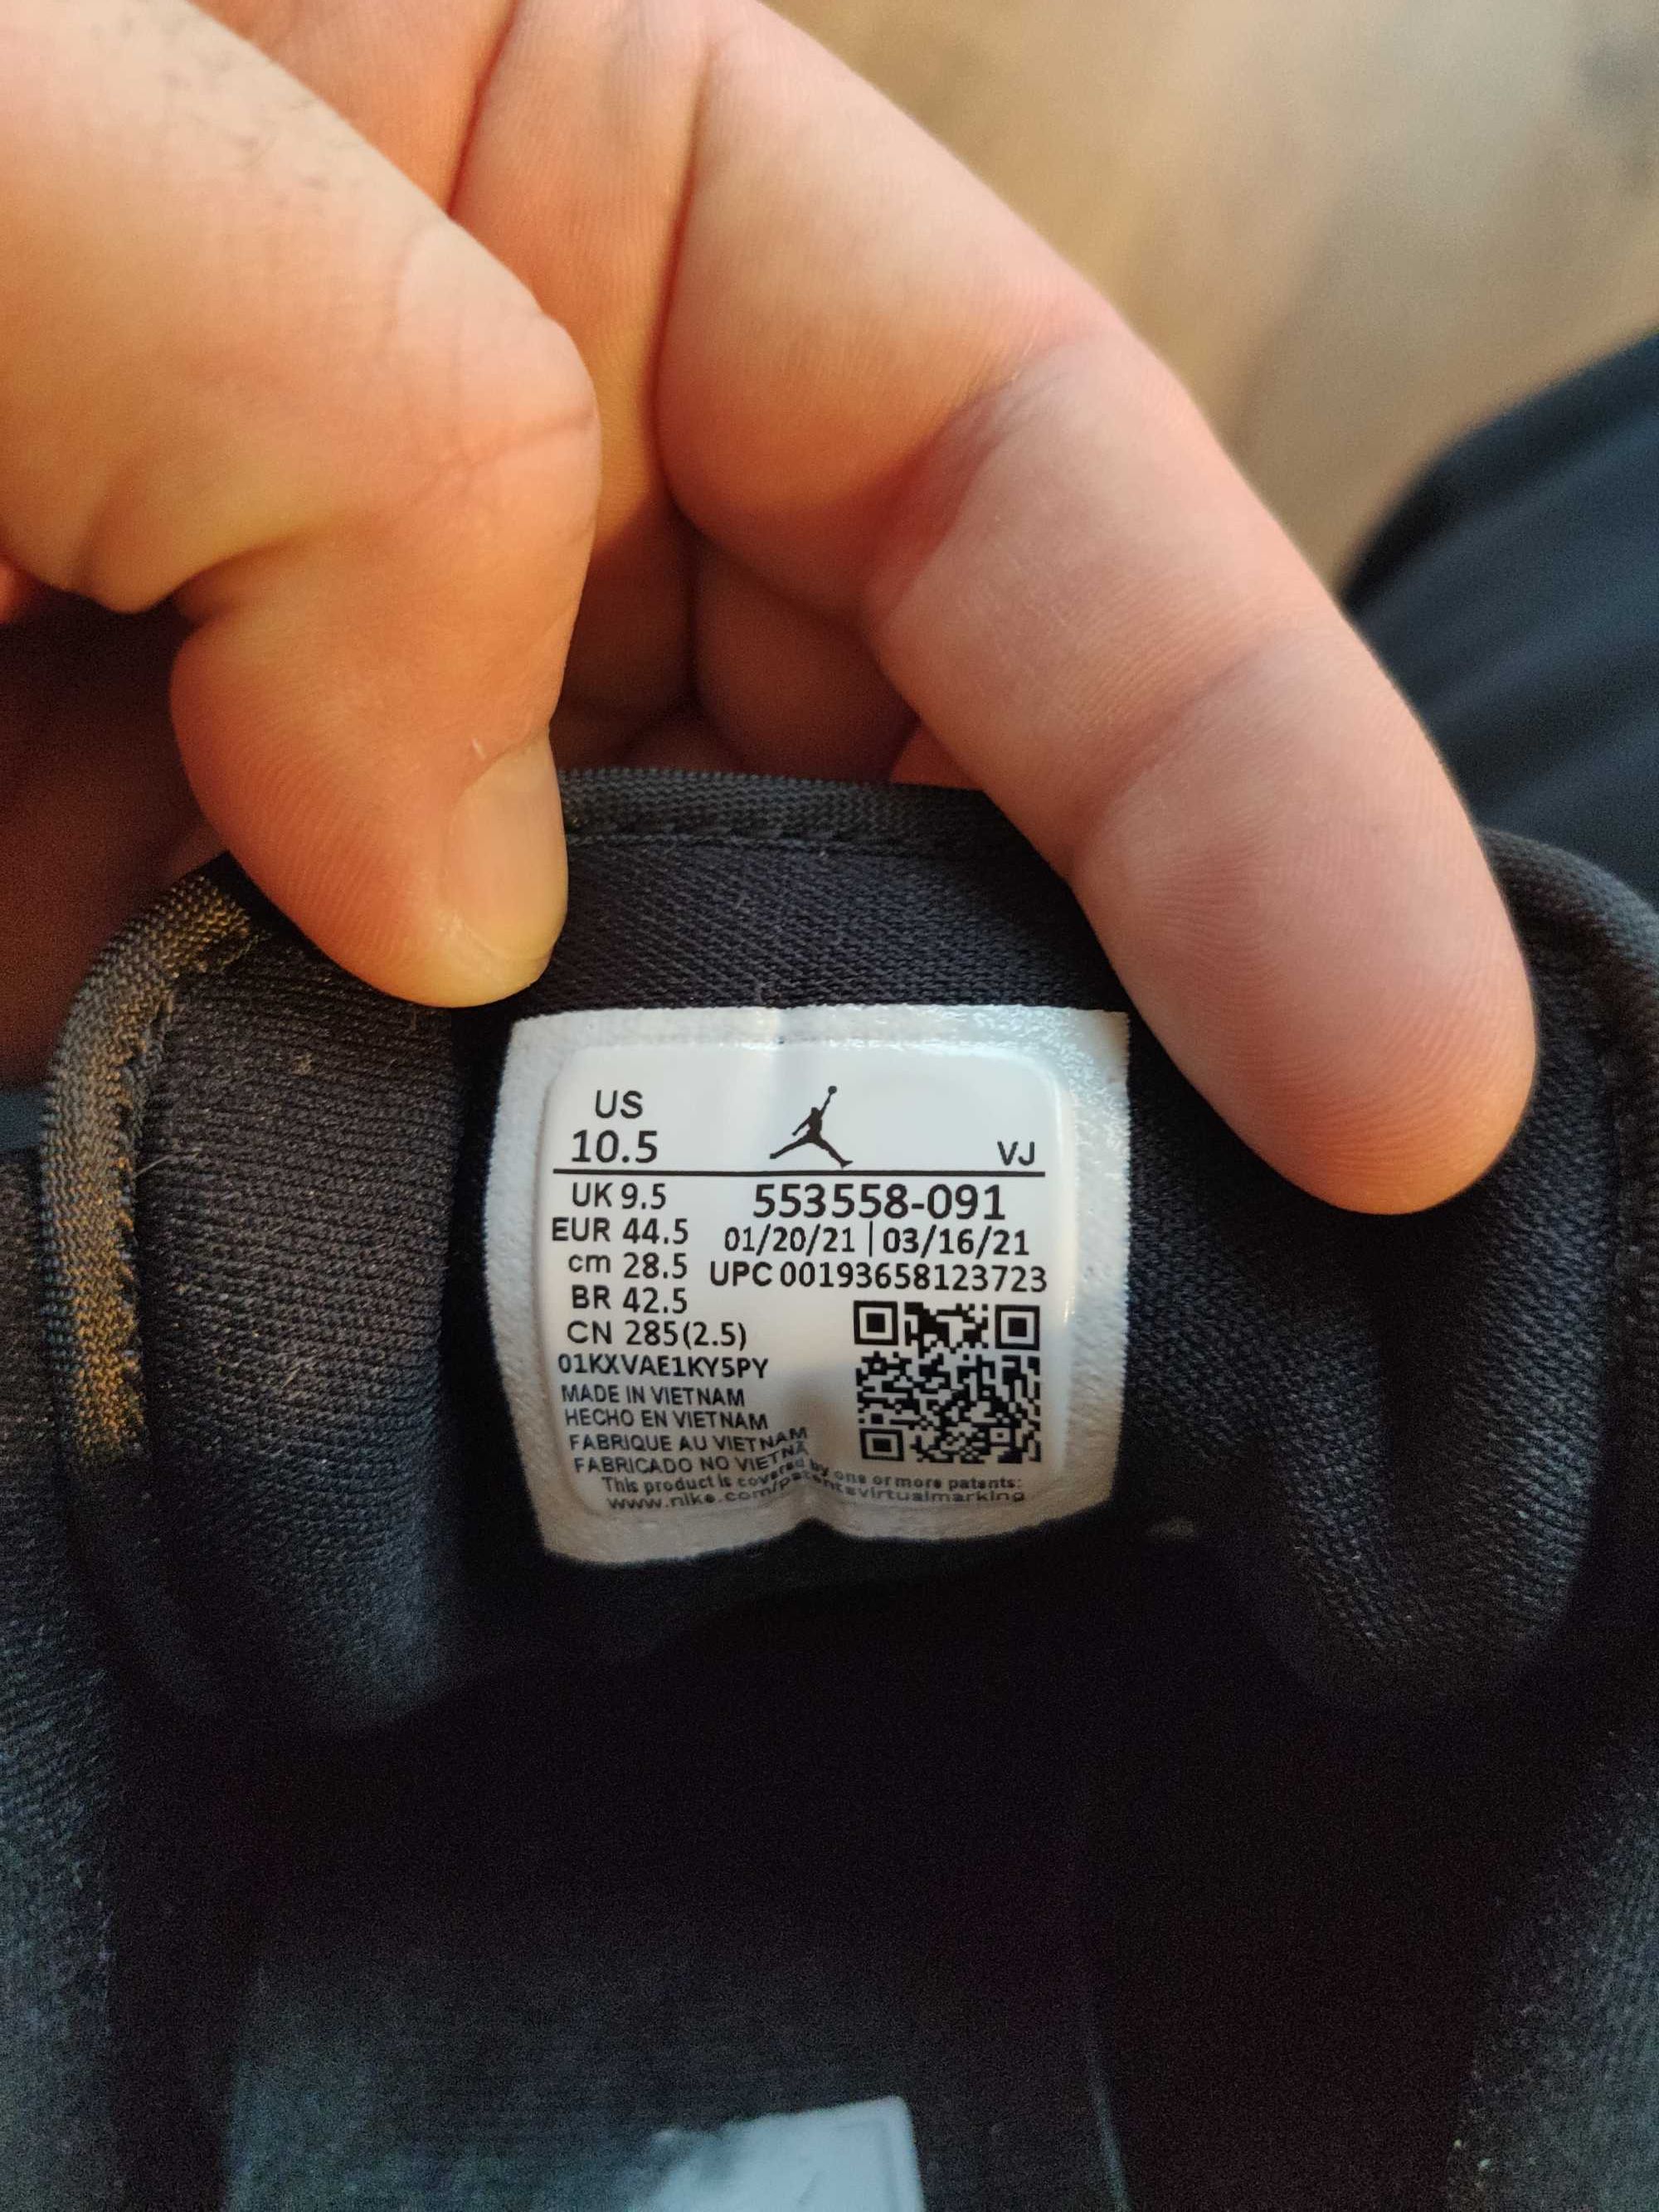 Nike Air Jordan 1 r 44,5 wkładka 28,5 cm